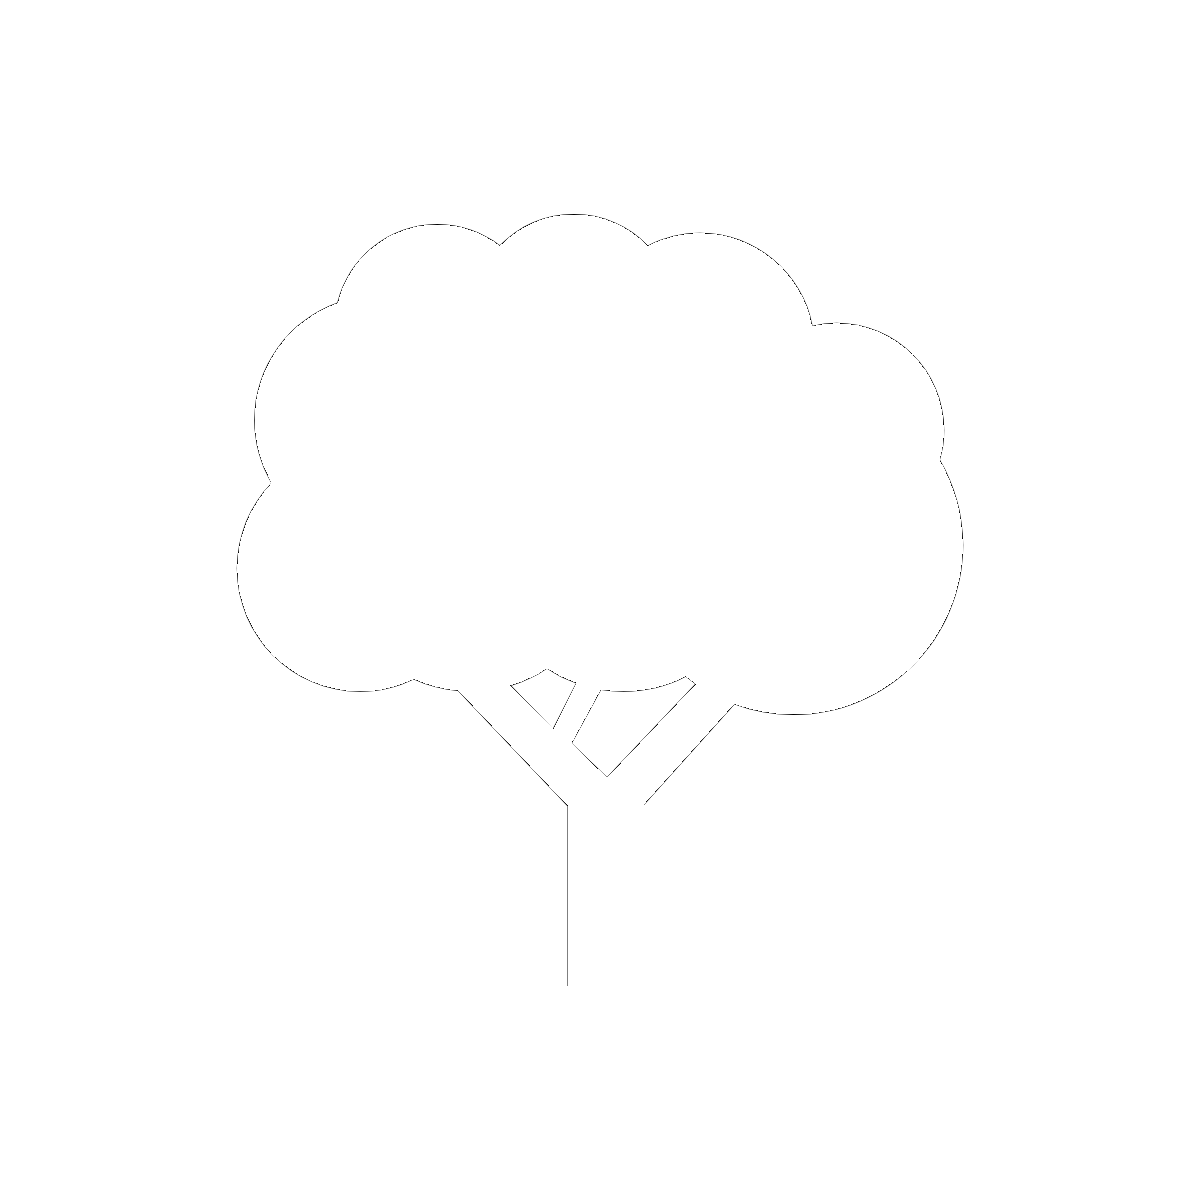 Symbol The Laburnum / Cherry Trees